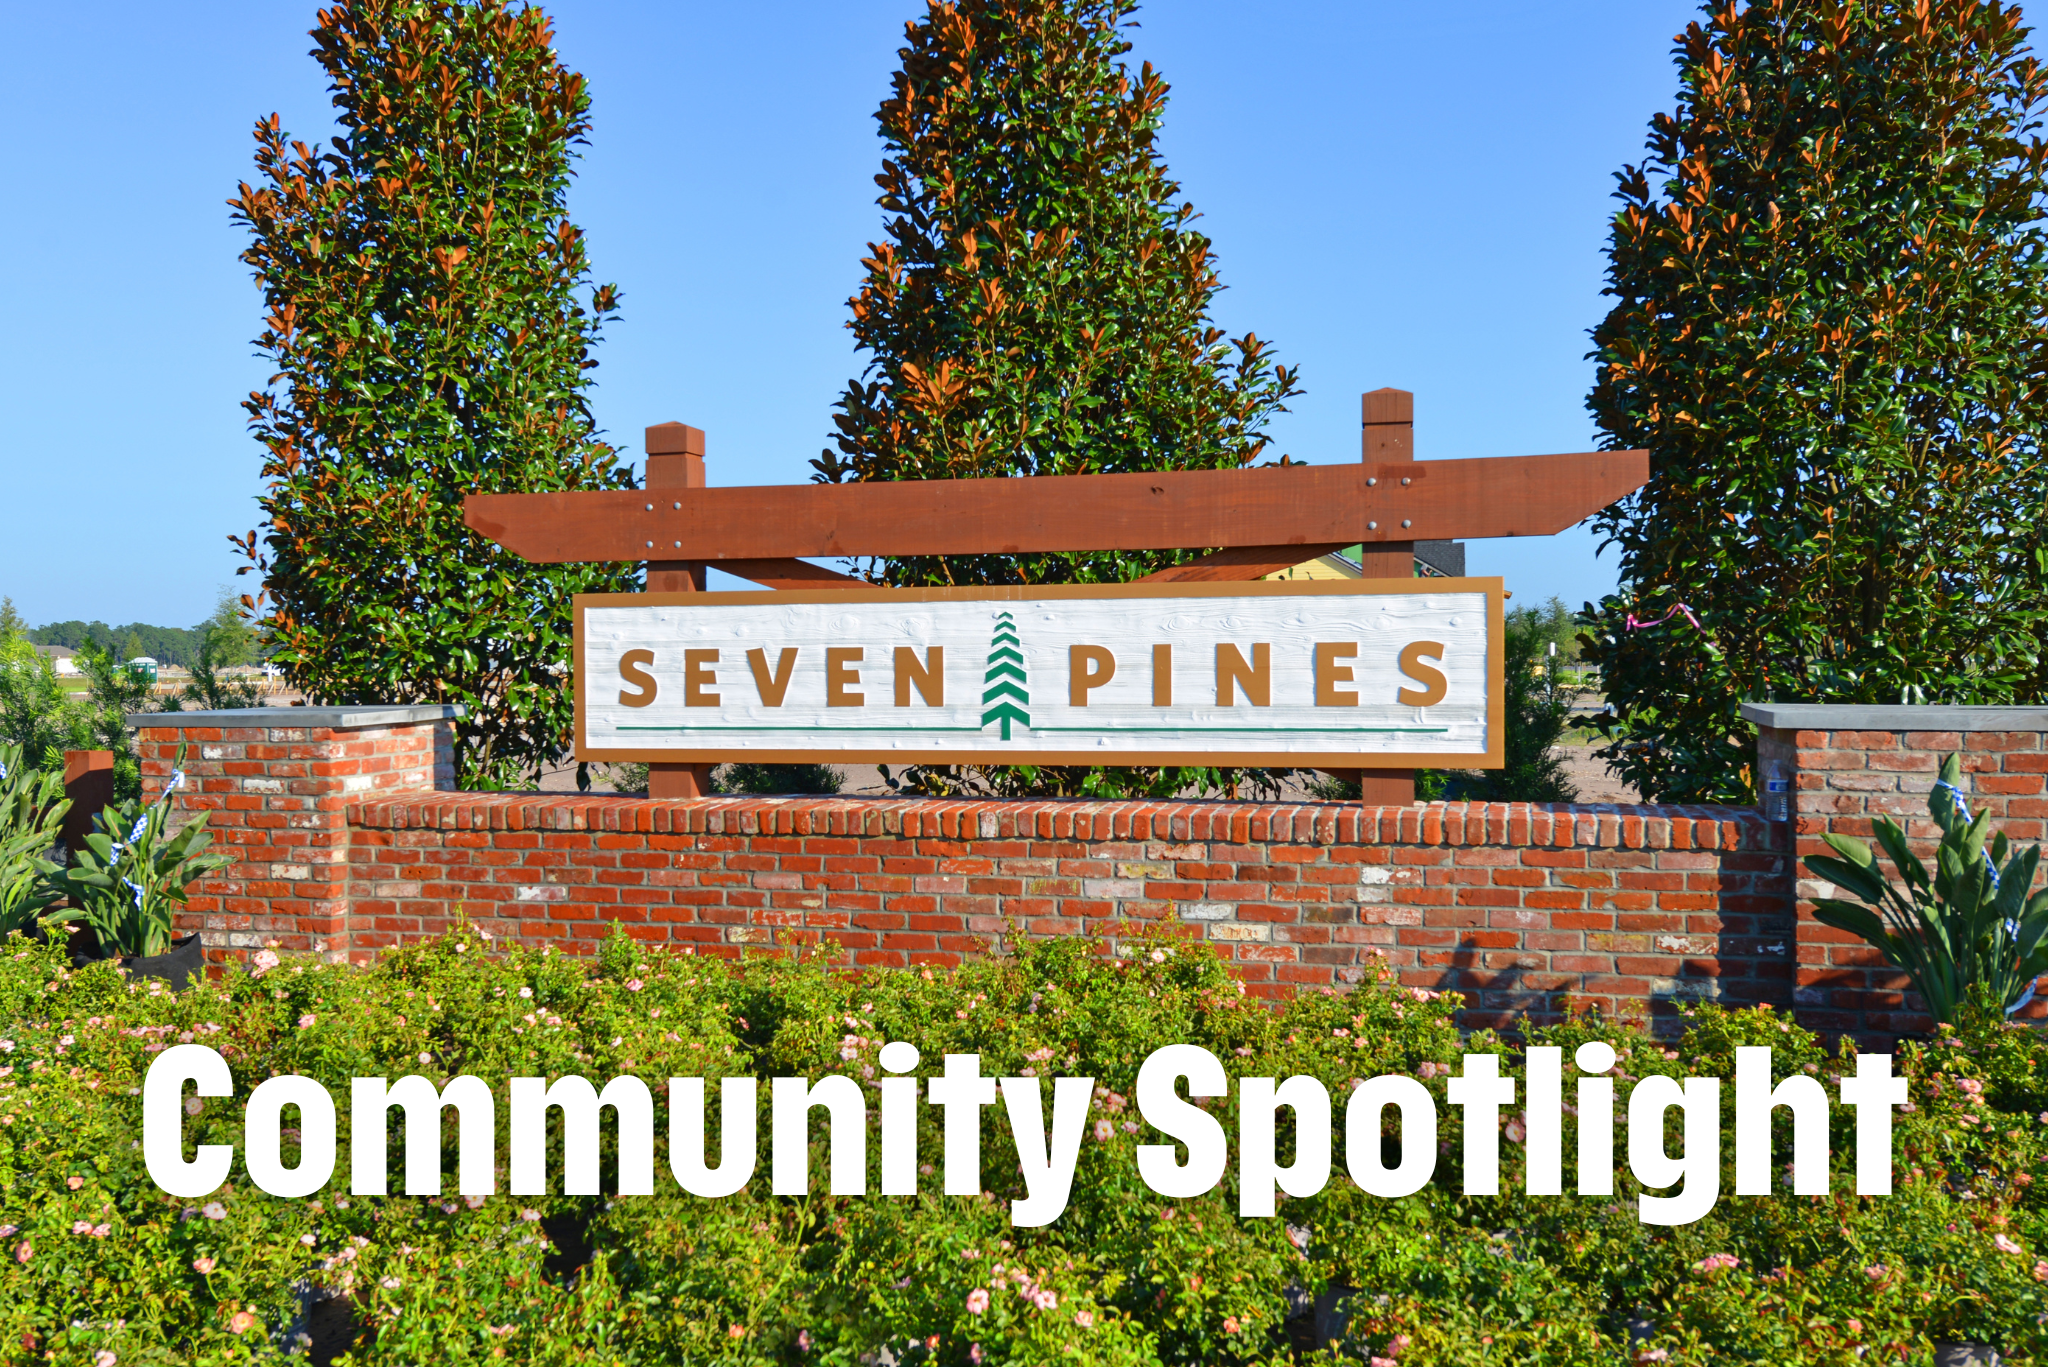 Community Spotlight: Exploring Seven Pines - Community Spotlight